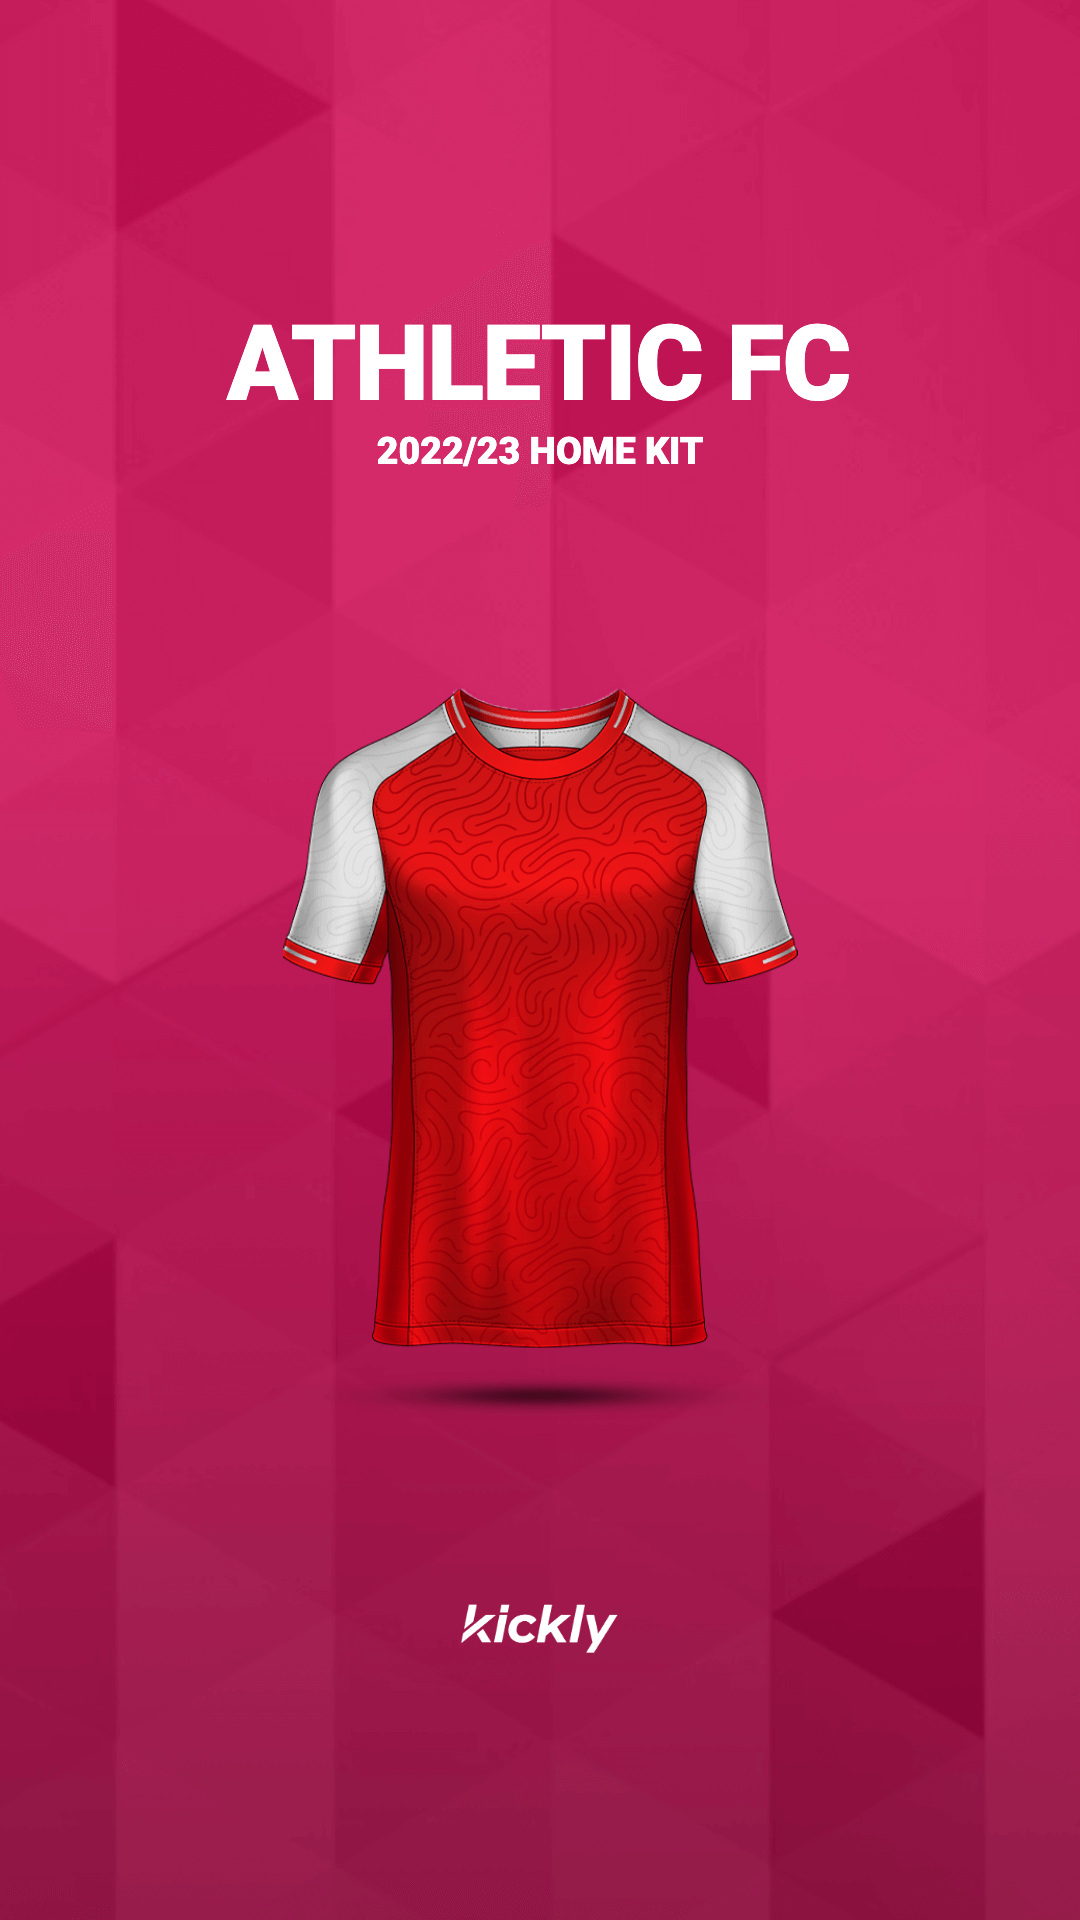 Soccer New Kit Announcement Design V